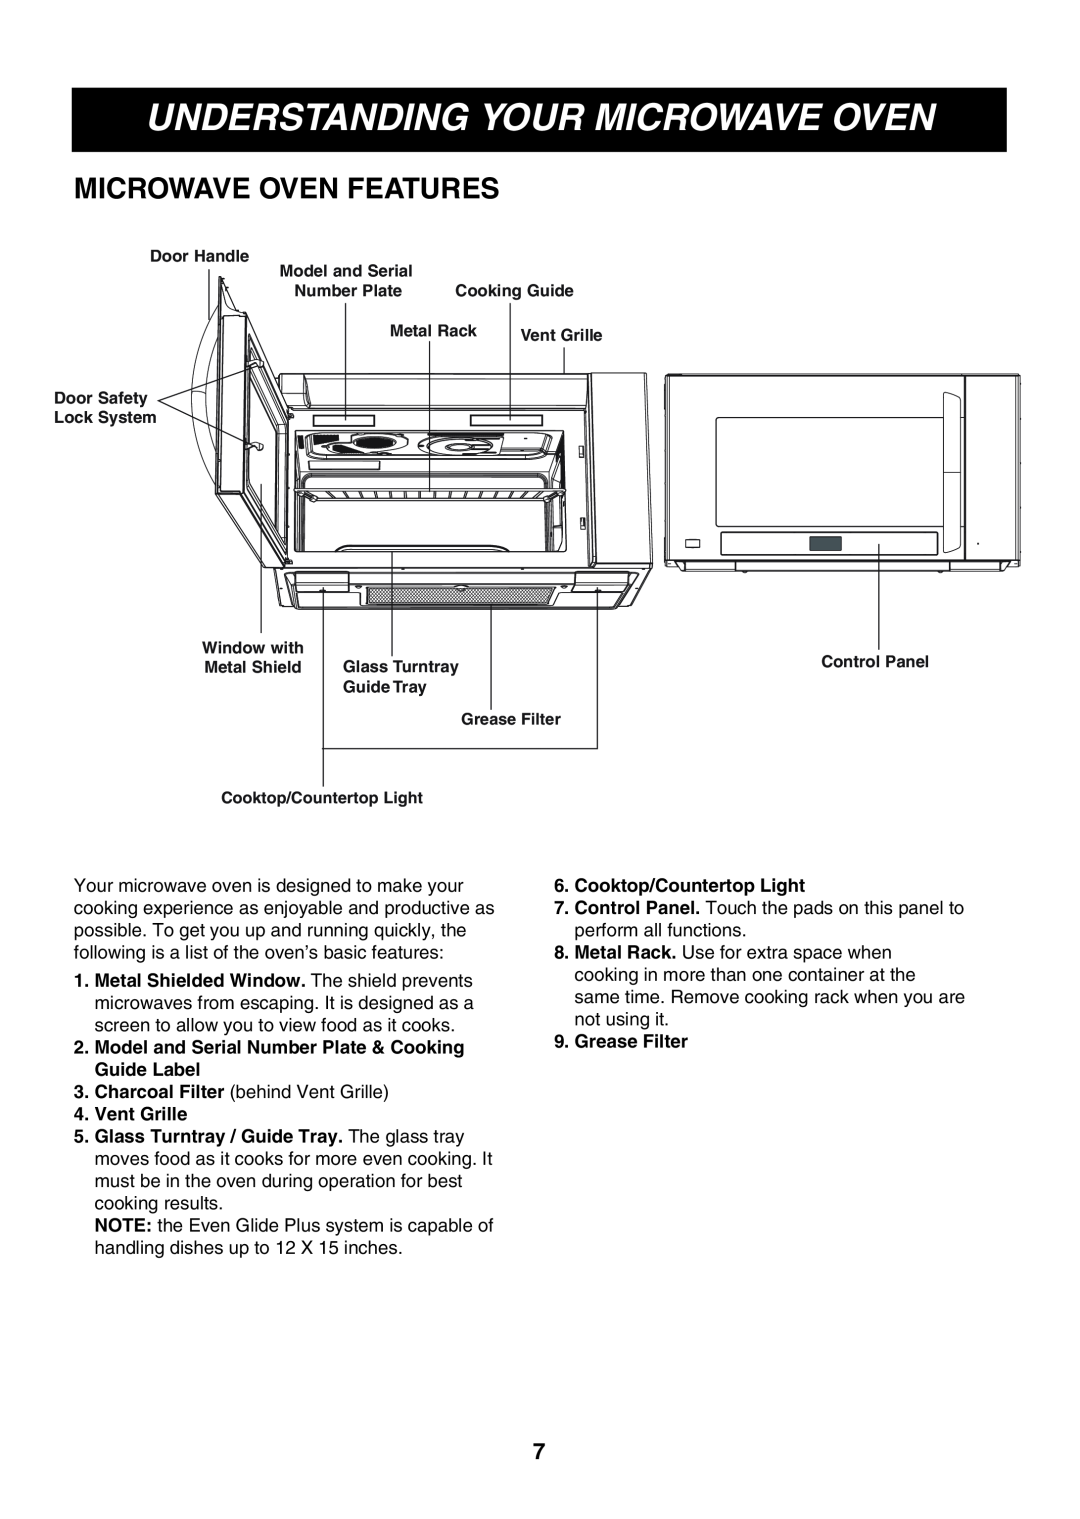 Minolta LMVM2085SB owner manual Microwave Oven Features, Understanding Your Microwave Oven 